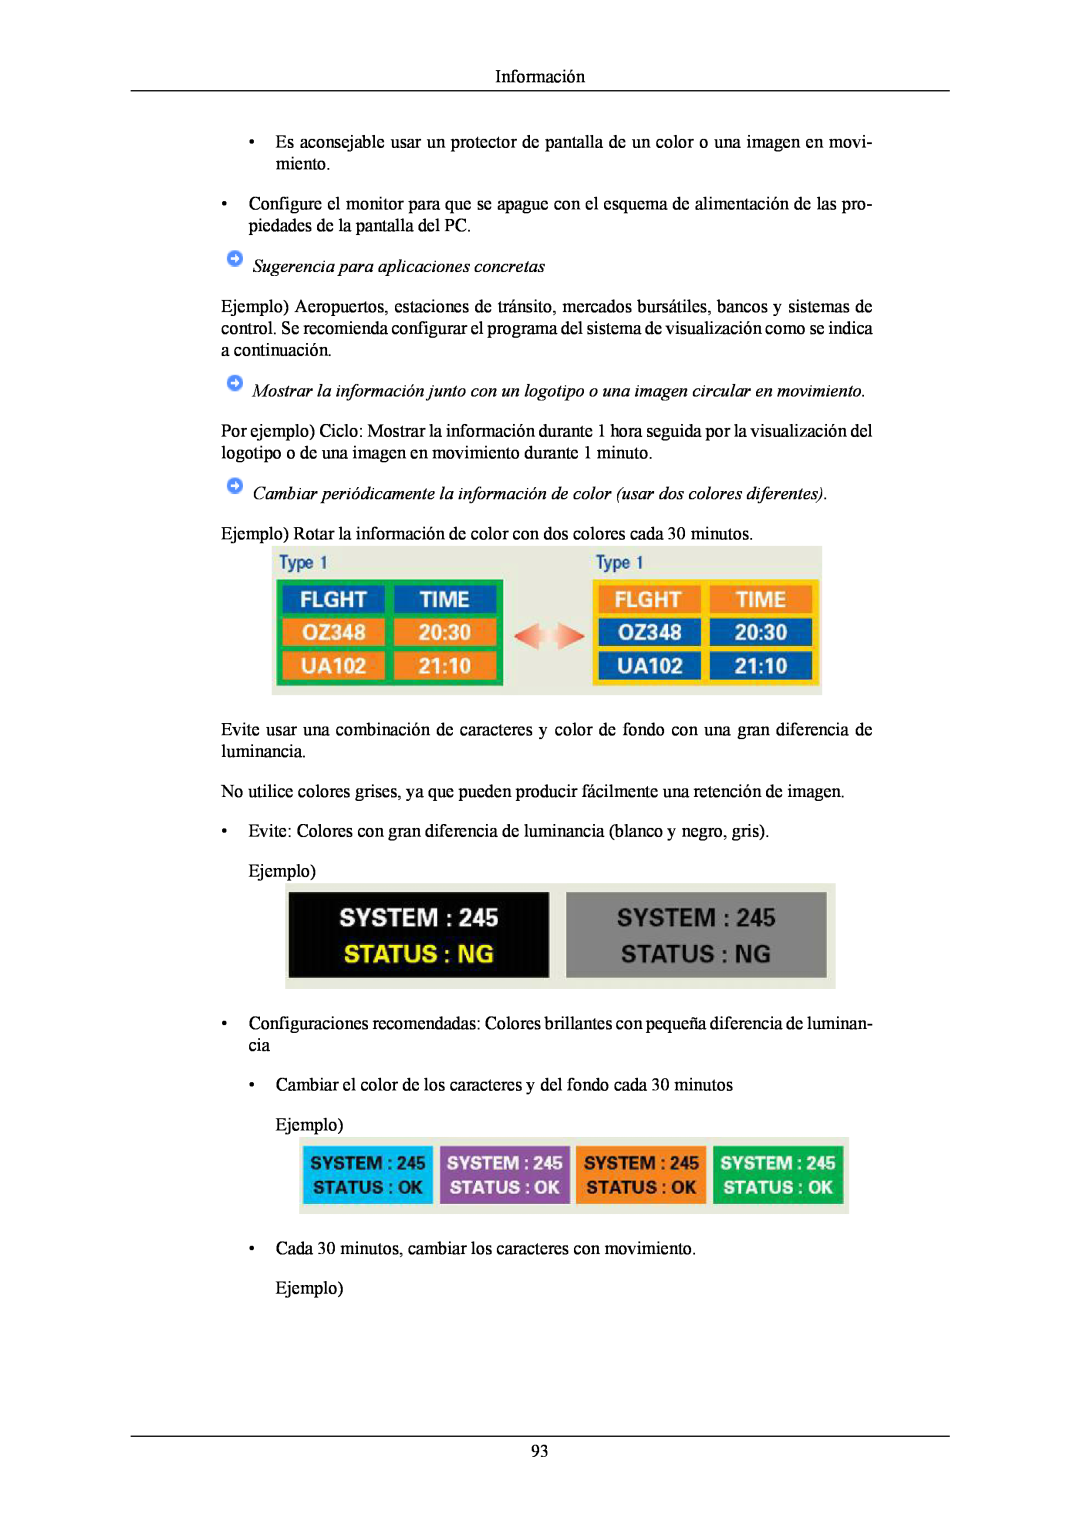 Samsung T190G, T220G, T200G manual Información, Sugerencia para aplicaciones concretas 